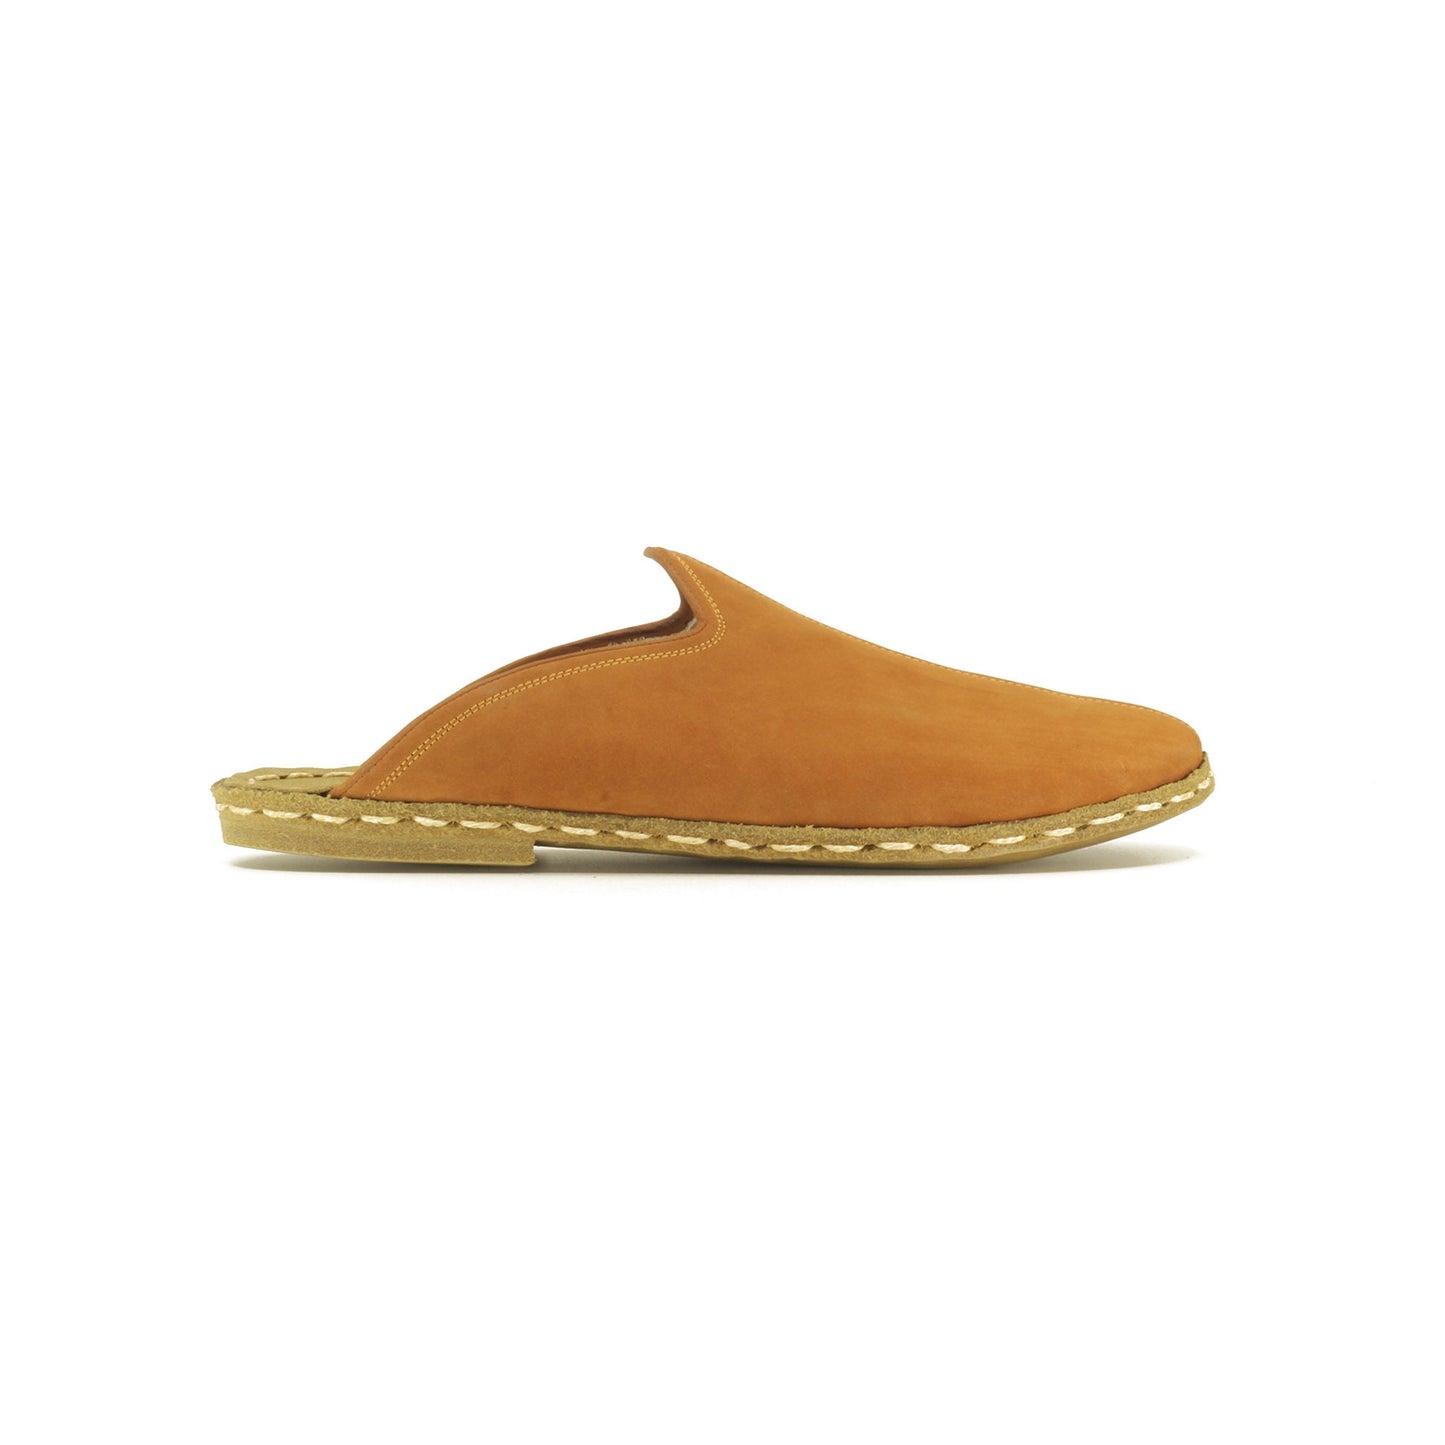 Orange House Slippers For Women Handmade Barefoot - Nefes Shoes